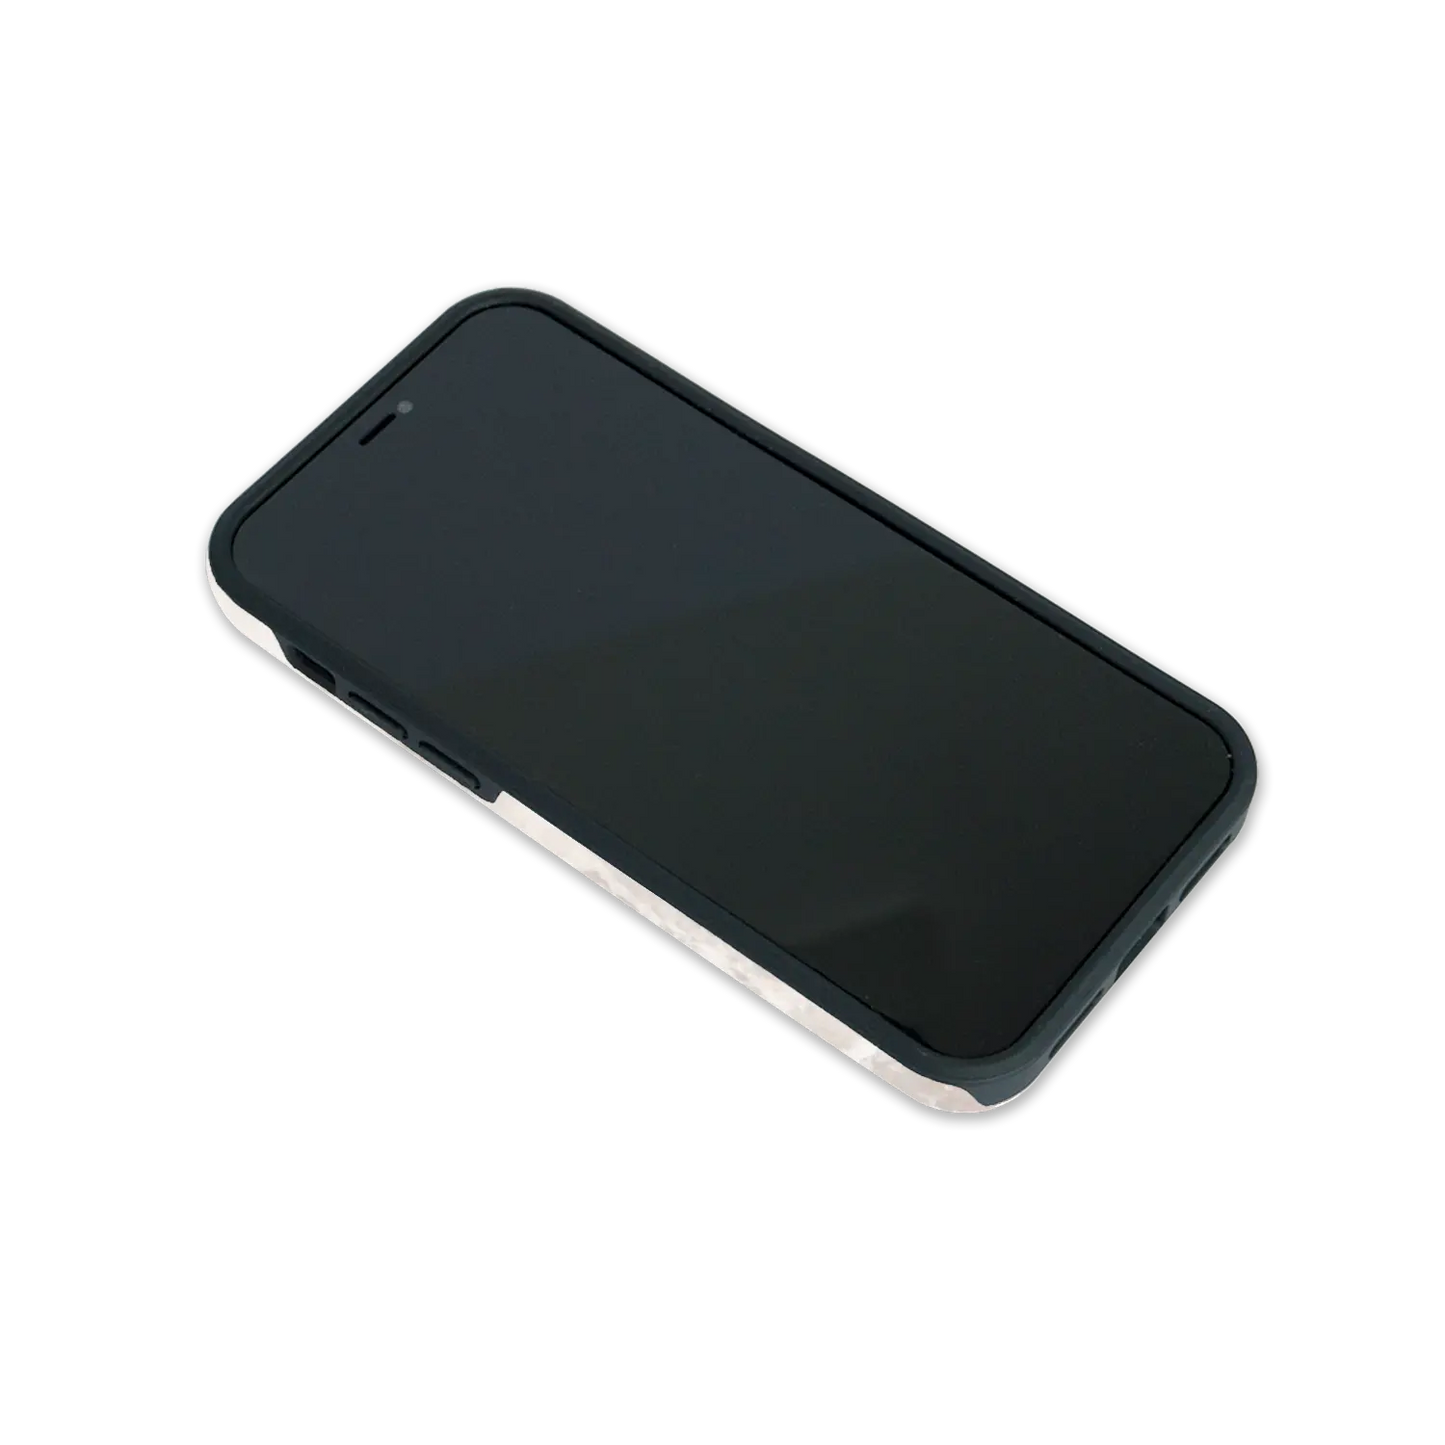 Cabina de fotos - Carcasa personalizada Galaxy S